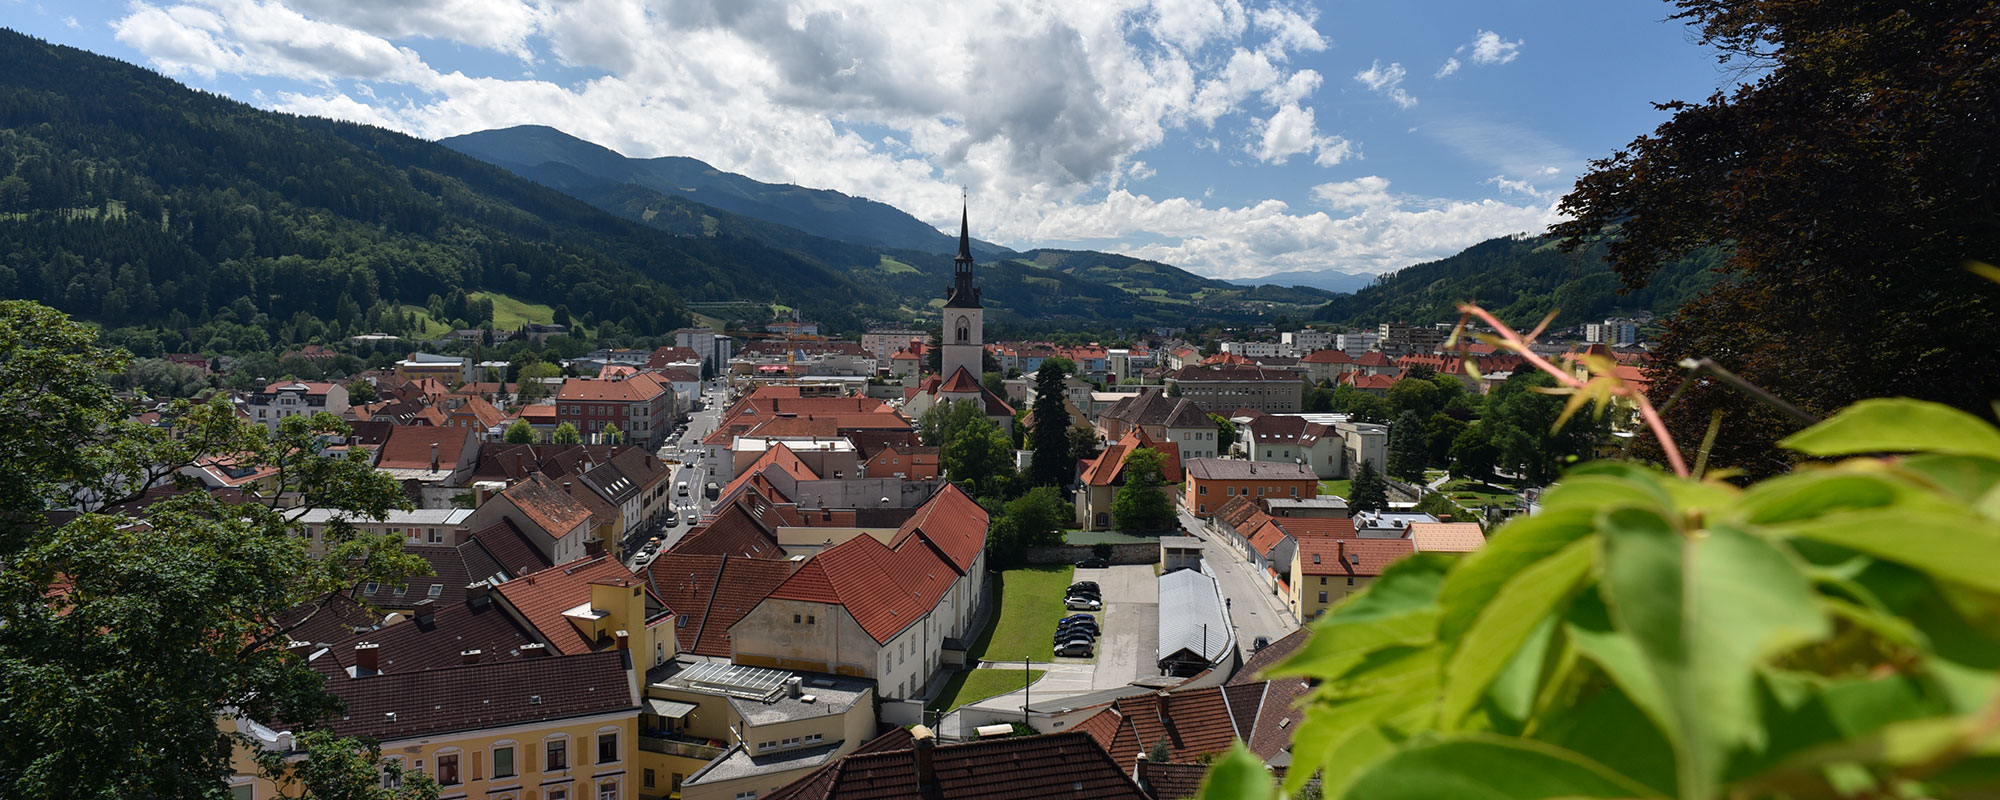 Blick vom Schlossberg auf die Stadt Bruck an der Mur - zu sehen ist die Stadtpfarrkirche und Häuserdächer.